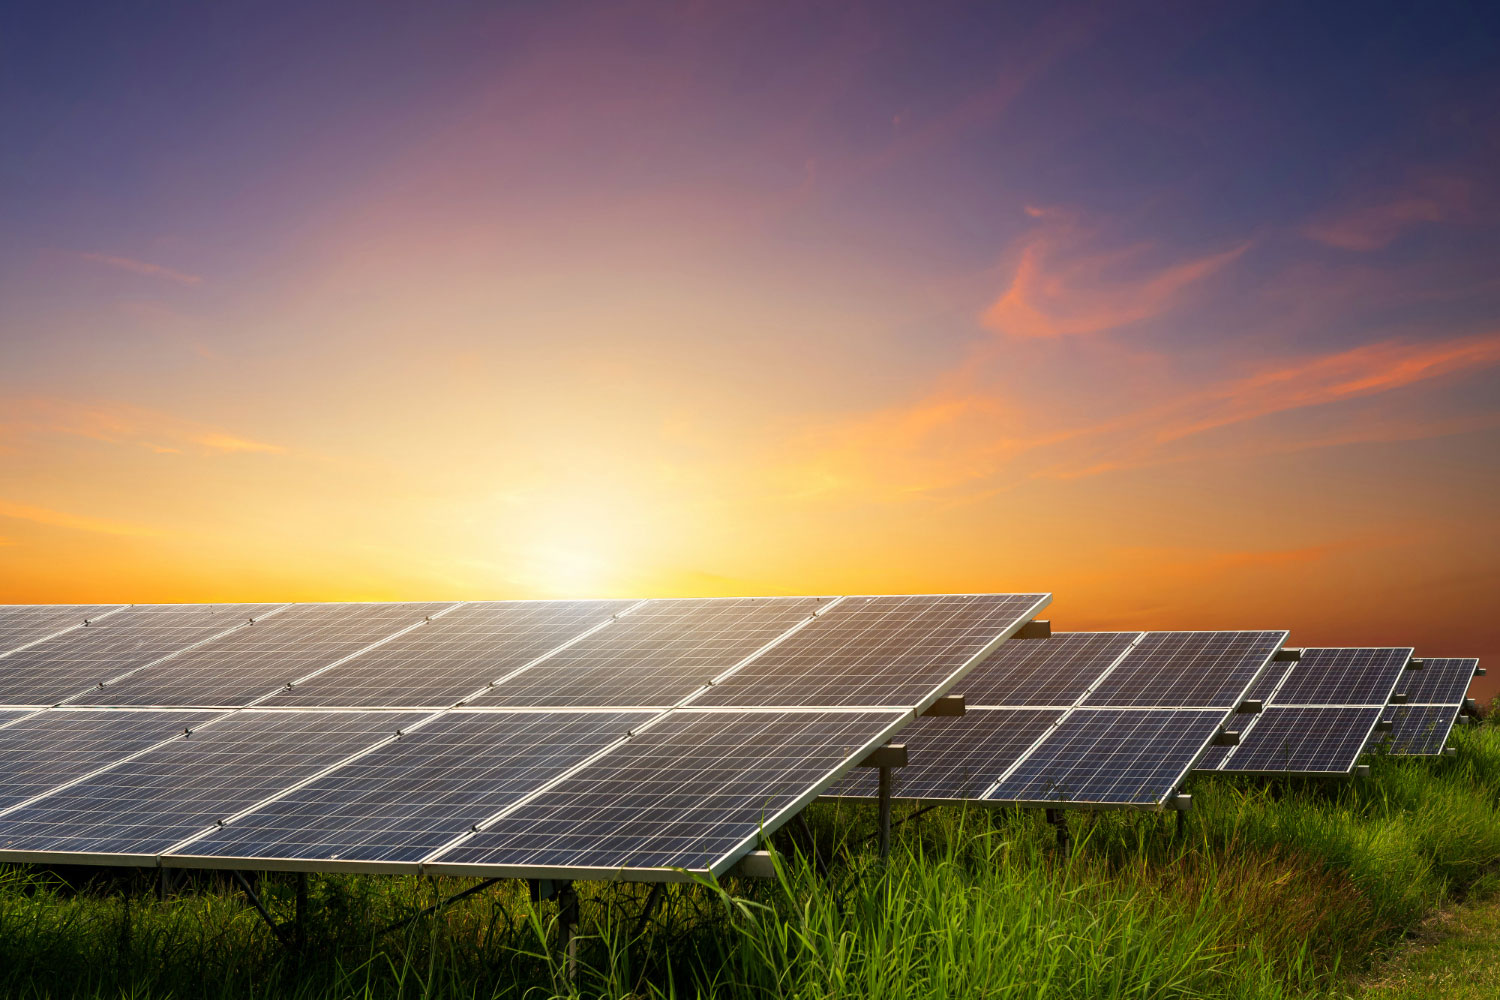 Energia Solar: o que é, como funciona e benefícios